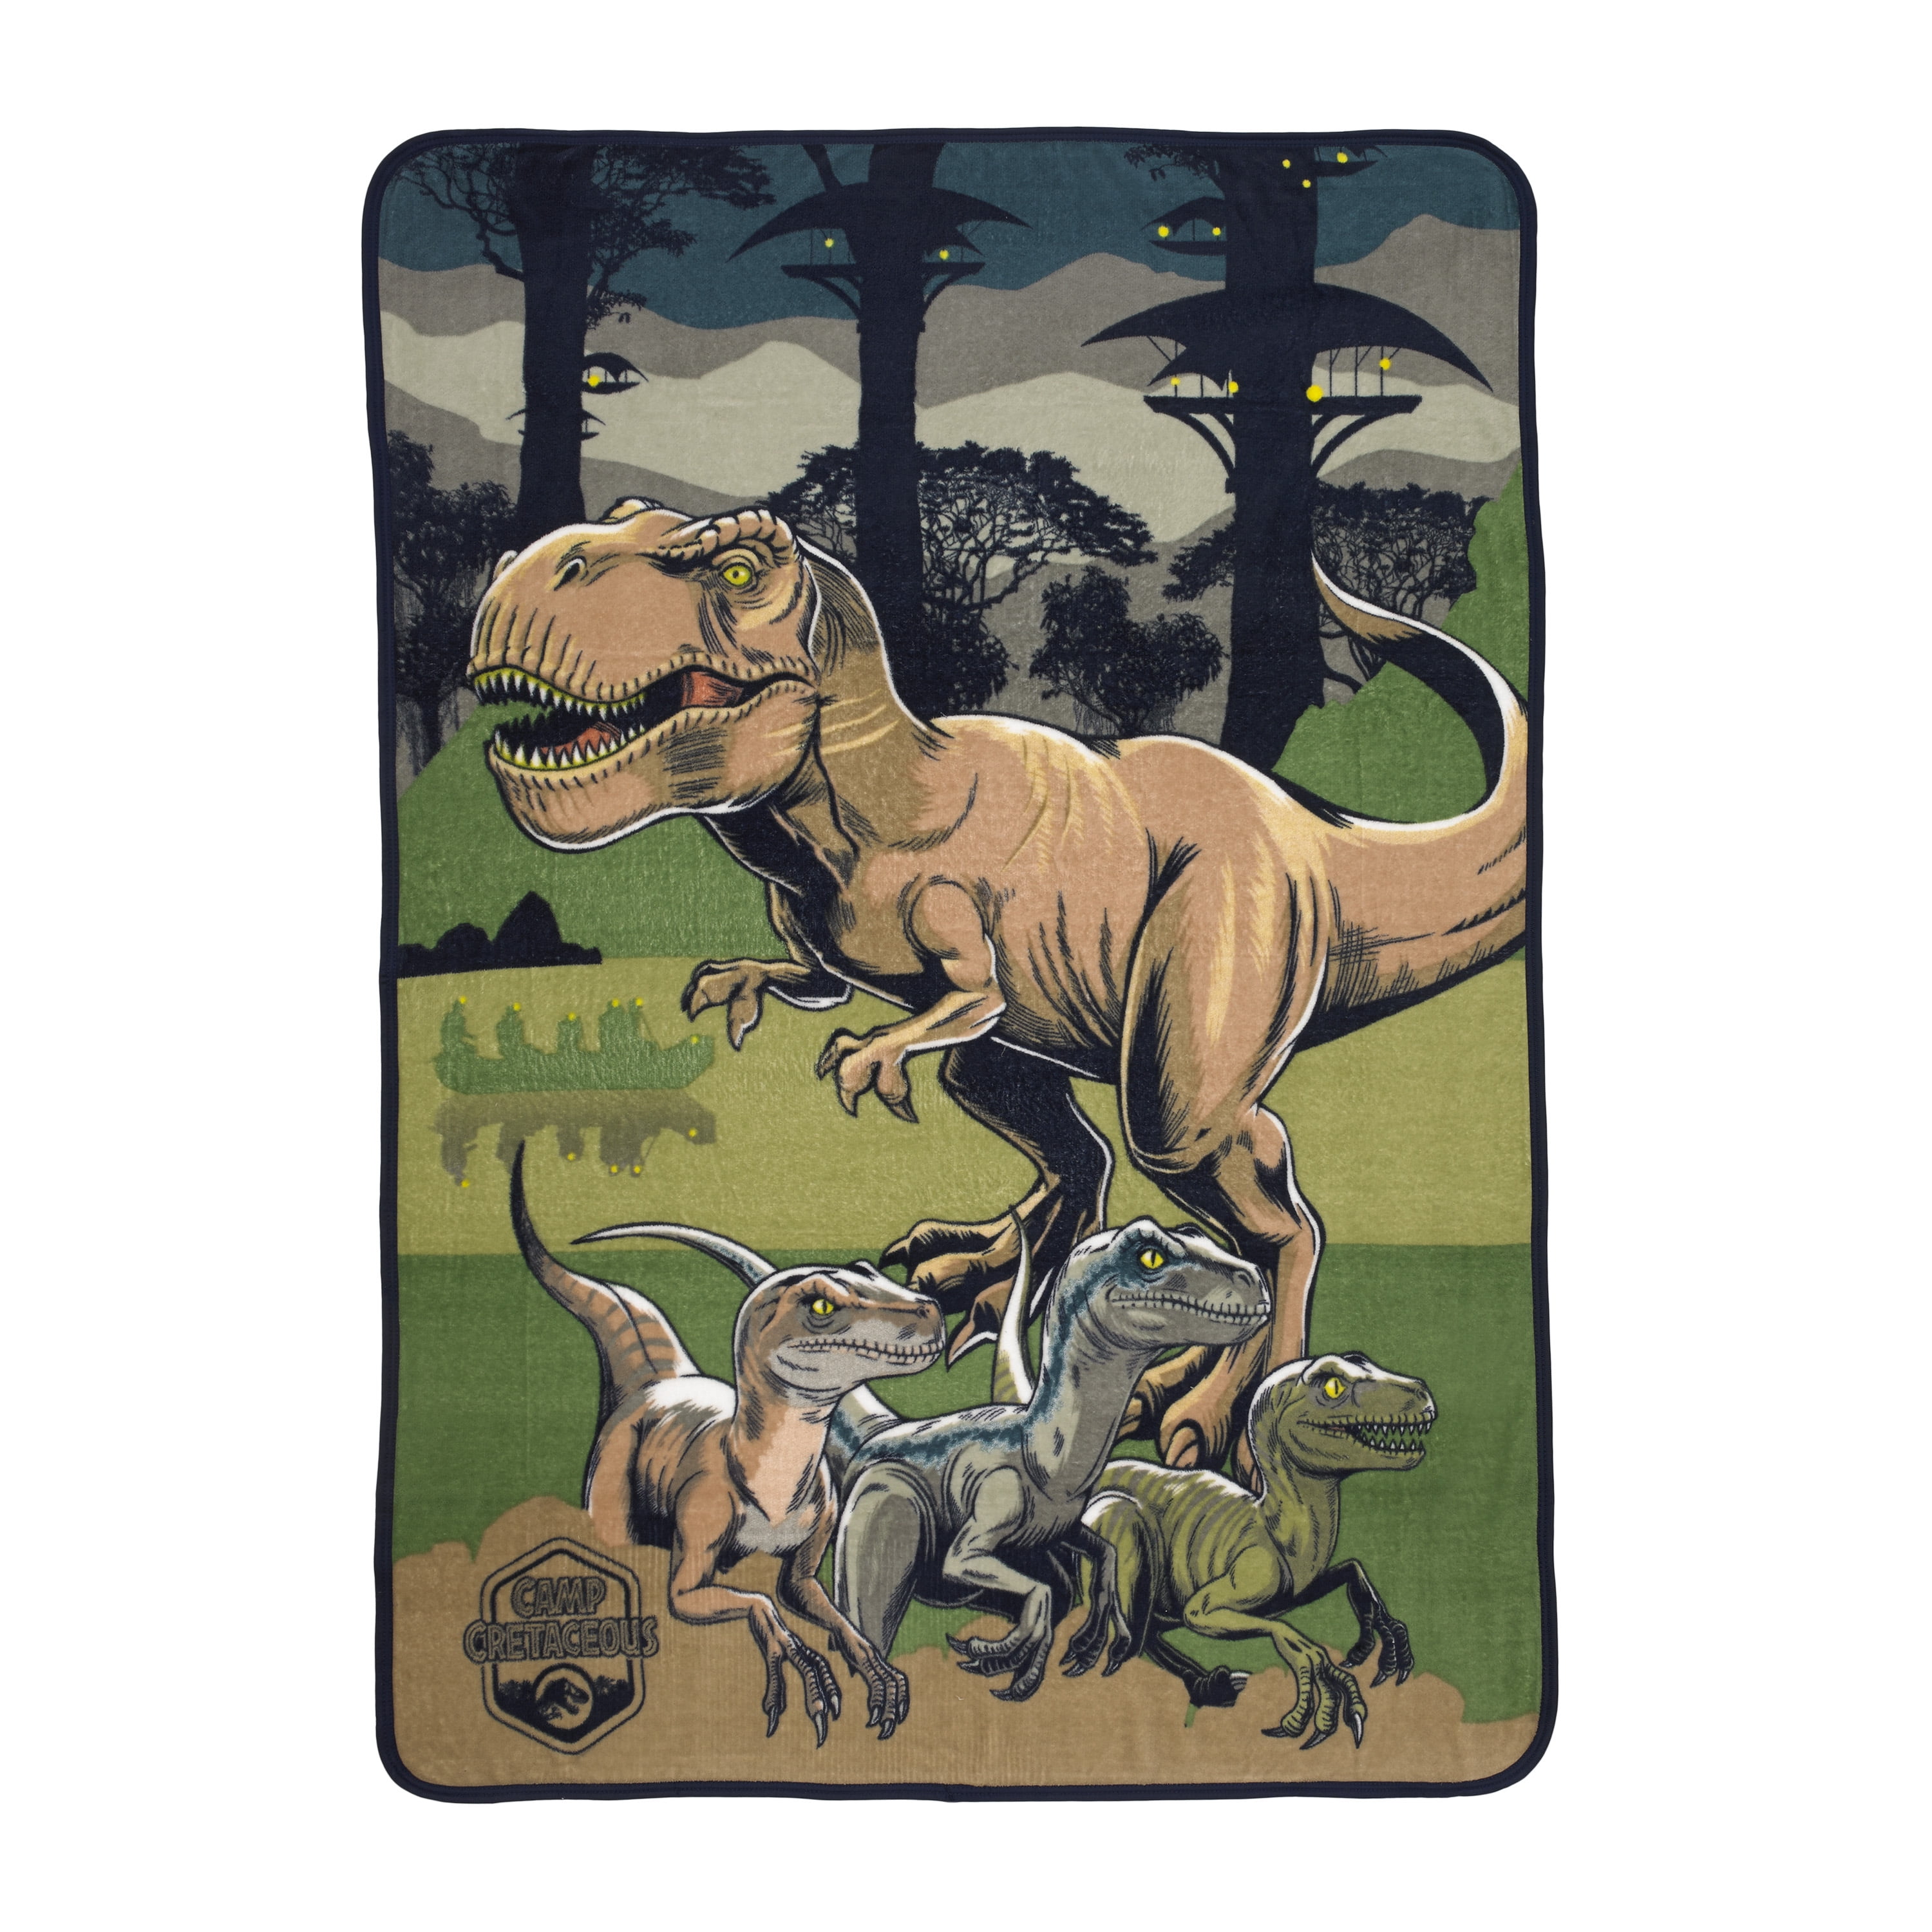 Jurassic World Kids Camp Cretaceous Fleece Throw Blanket, 46 x 60, Green, Universal